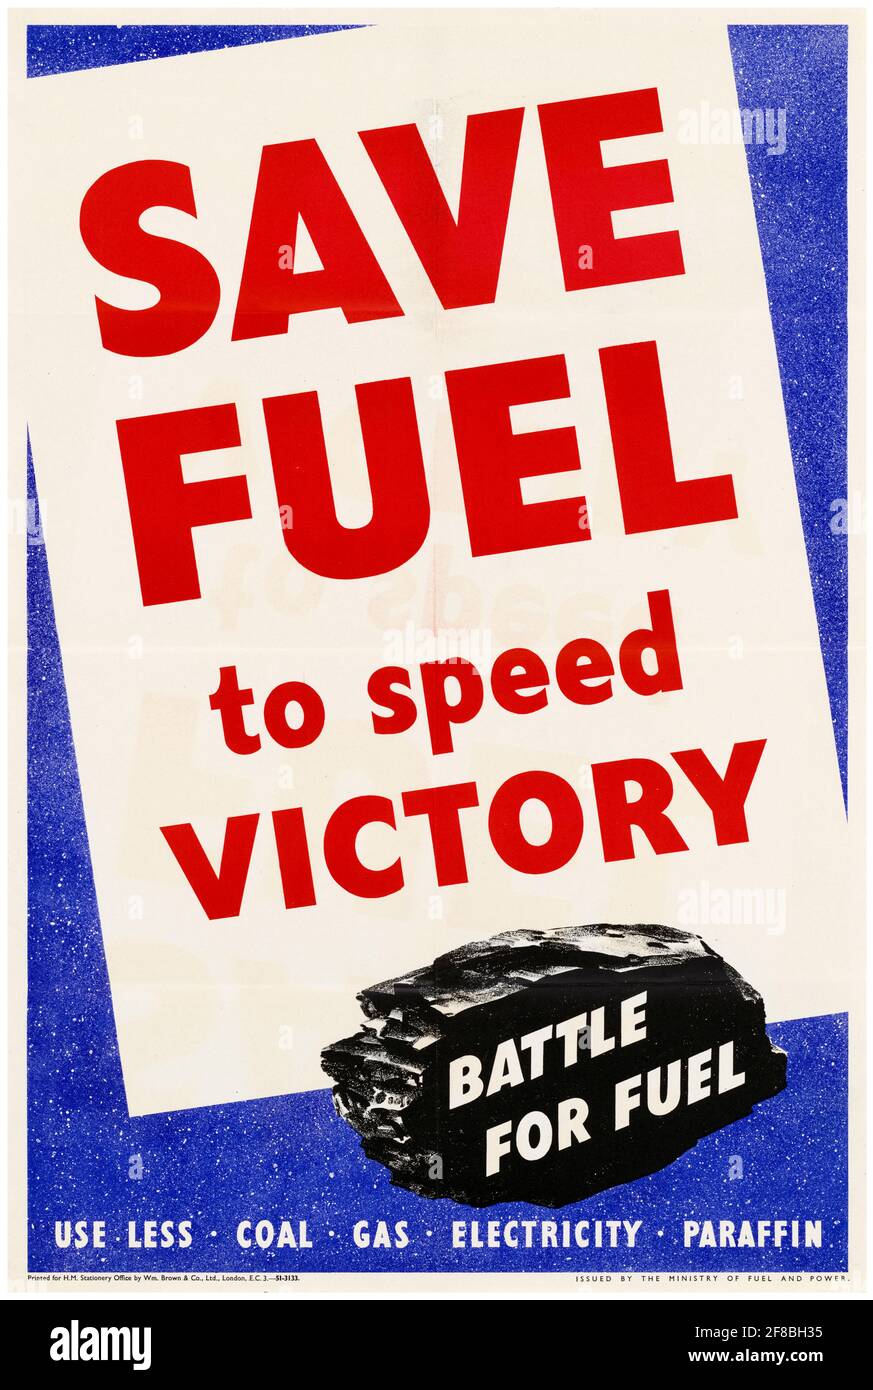 Save Fuel to Speed Victory, britisches Plakat zum Sparen von Kraftstoff aus dem 2. Weltkrieg, 1942-1945 Stockfoto